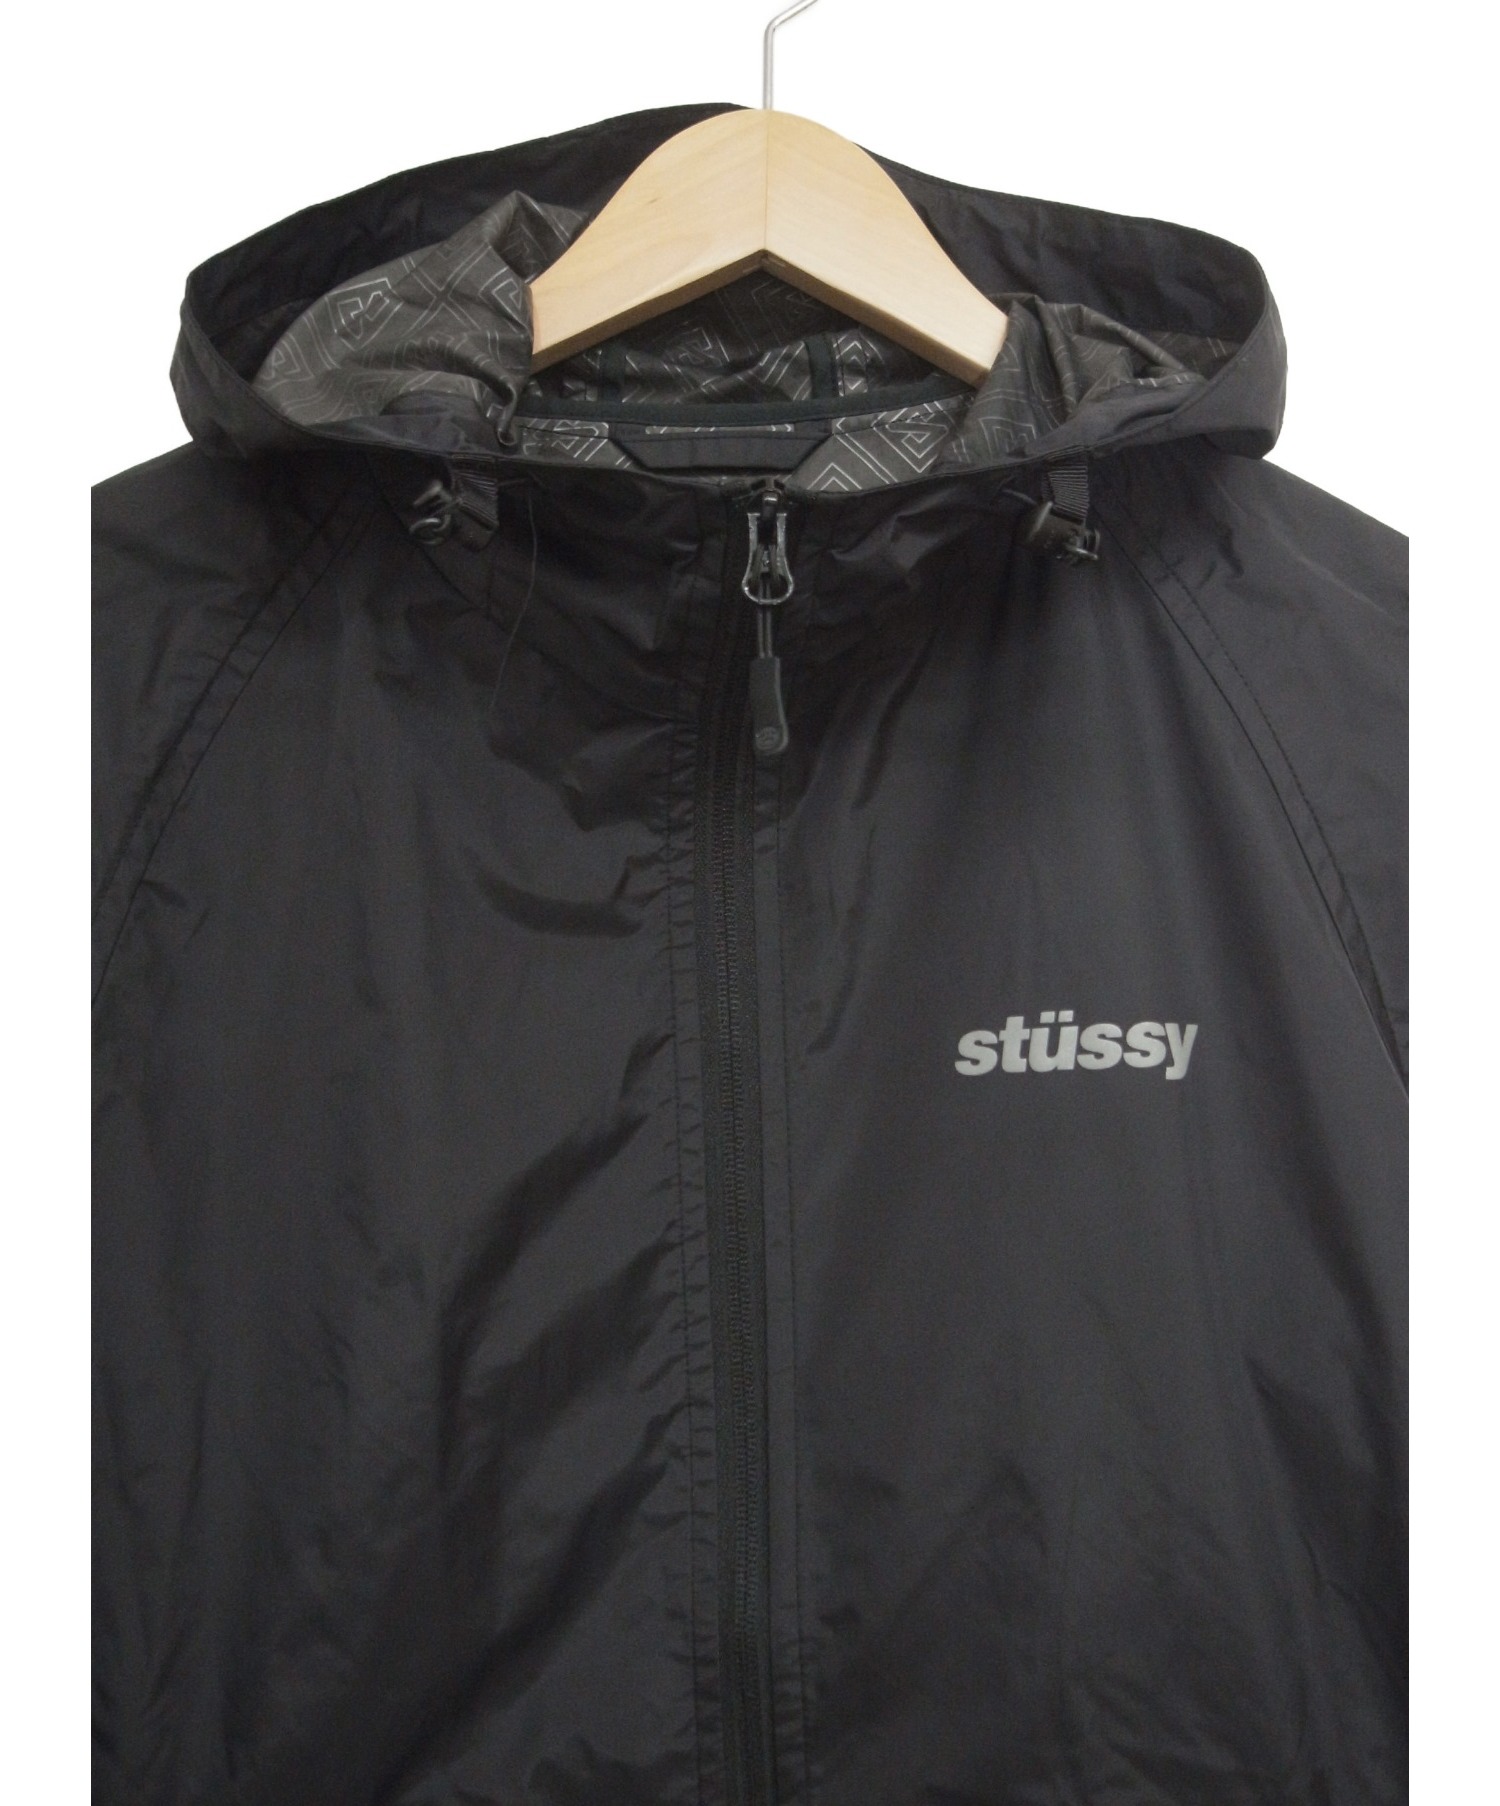 stussy (ステューシー) マウンテンパーカー ブラック サイズ:M